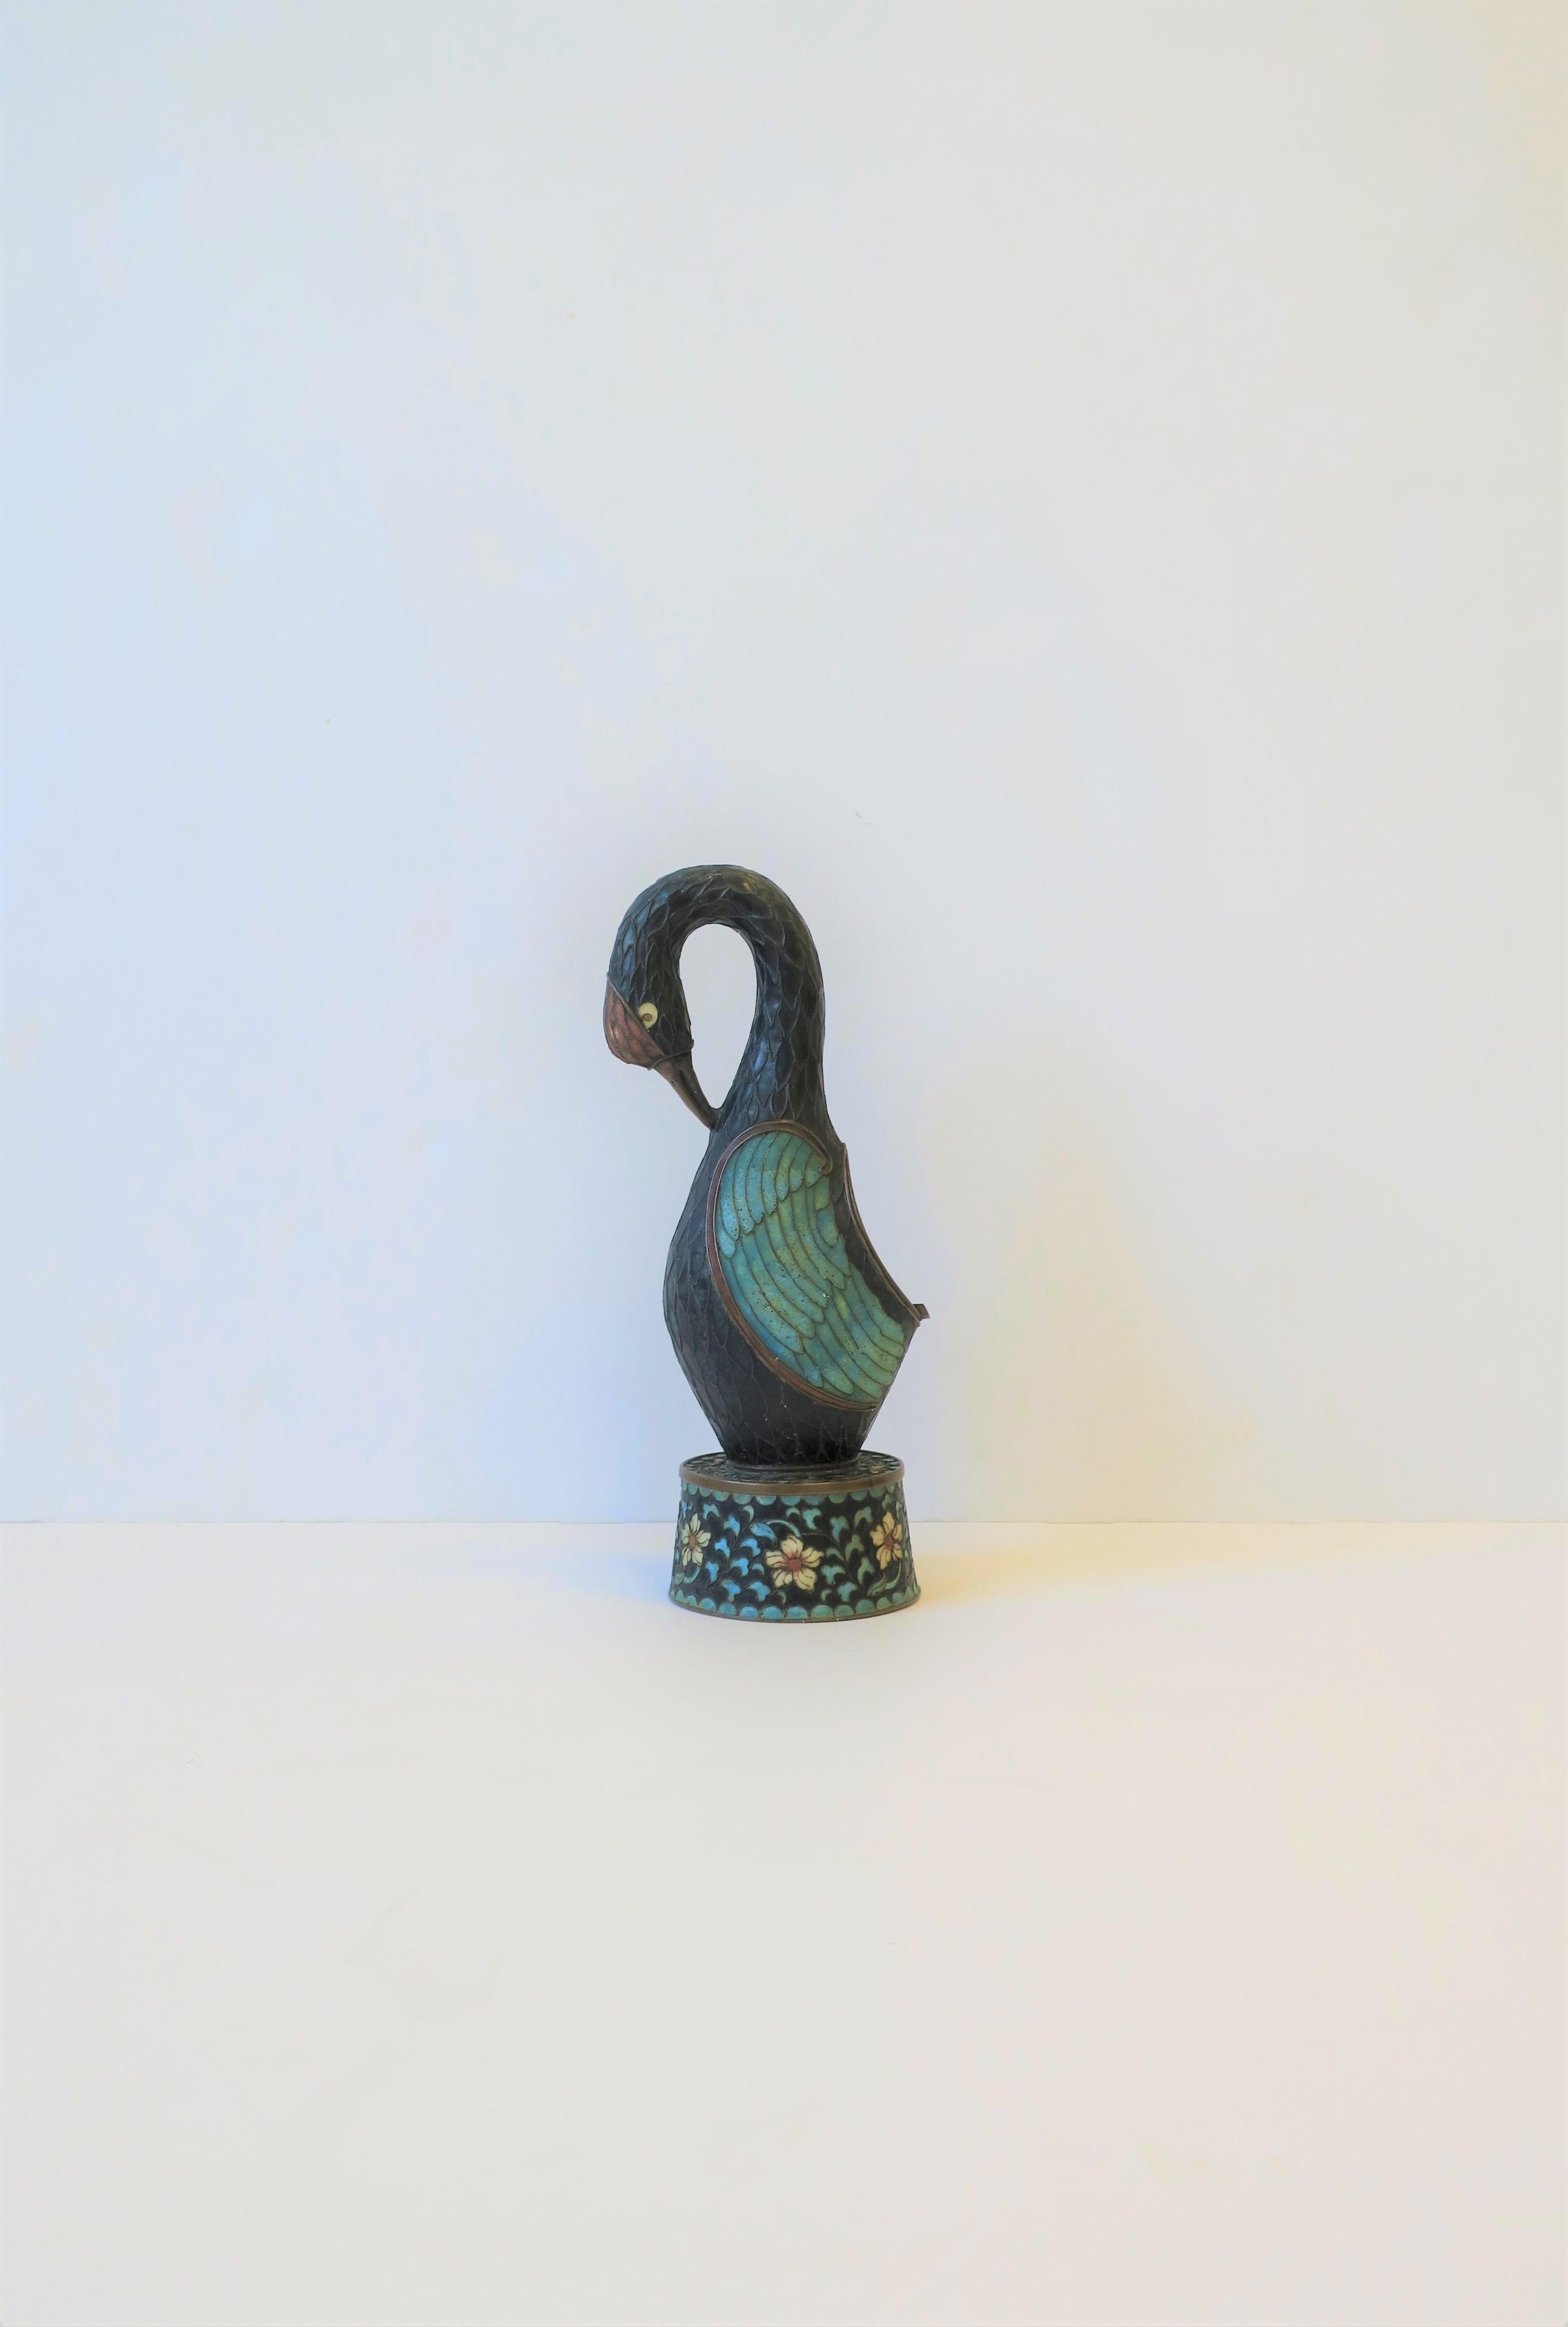 Eine schöne chinesische Art Deco Periode champlevé Emaille und Bronze Vogel Aschenbecher oder Skulptur, ca. 1920er-1930er Jahre, China. Abmessungen: 2,63